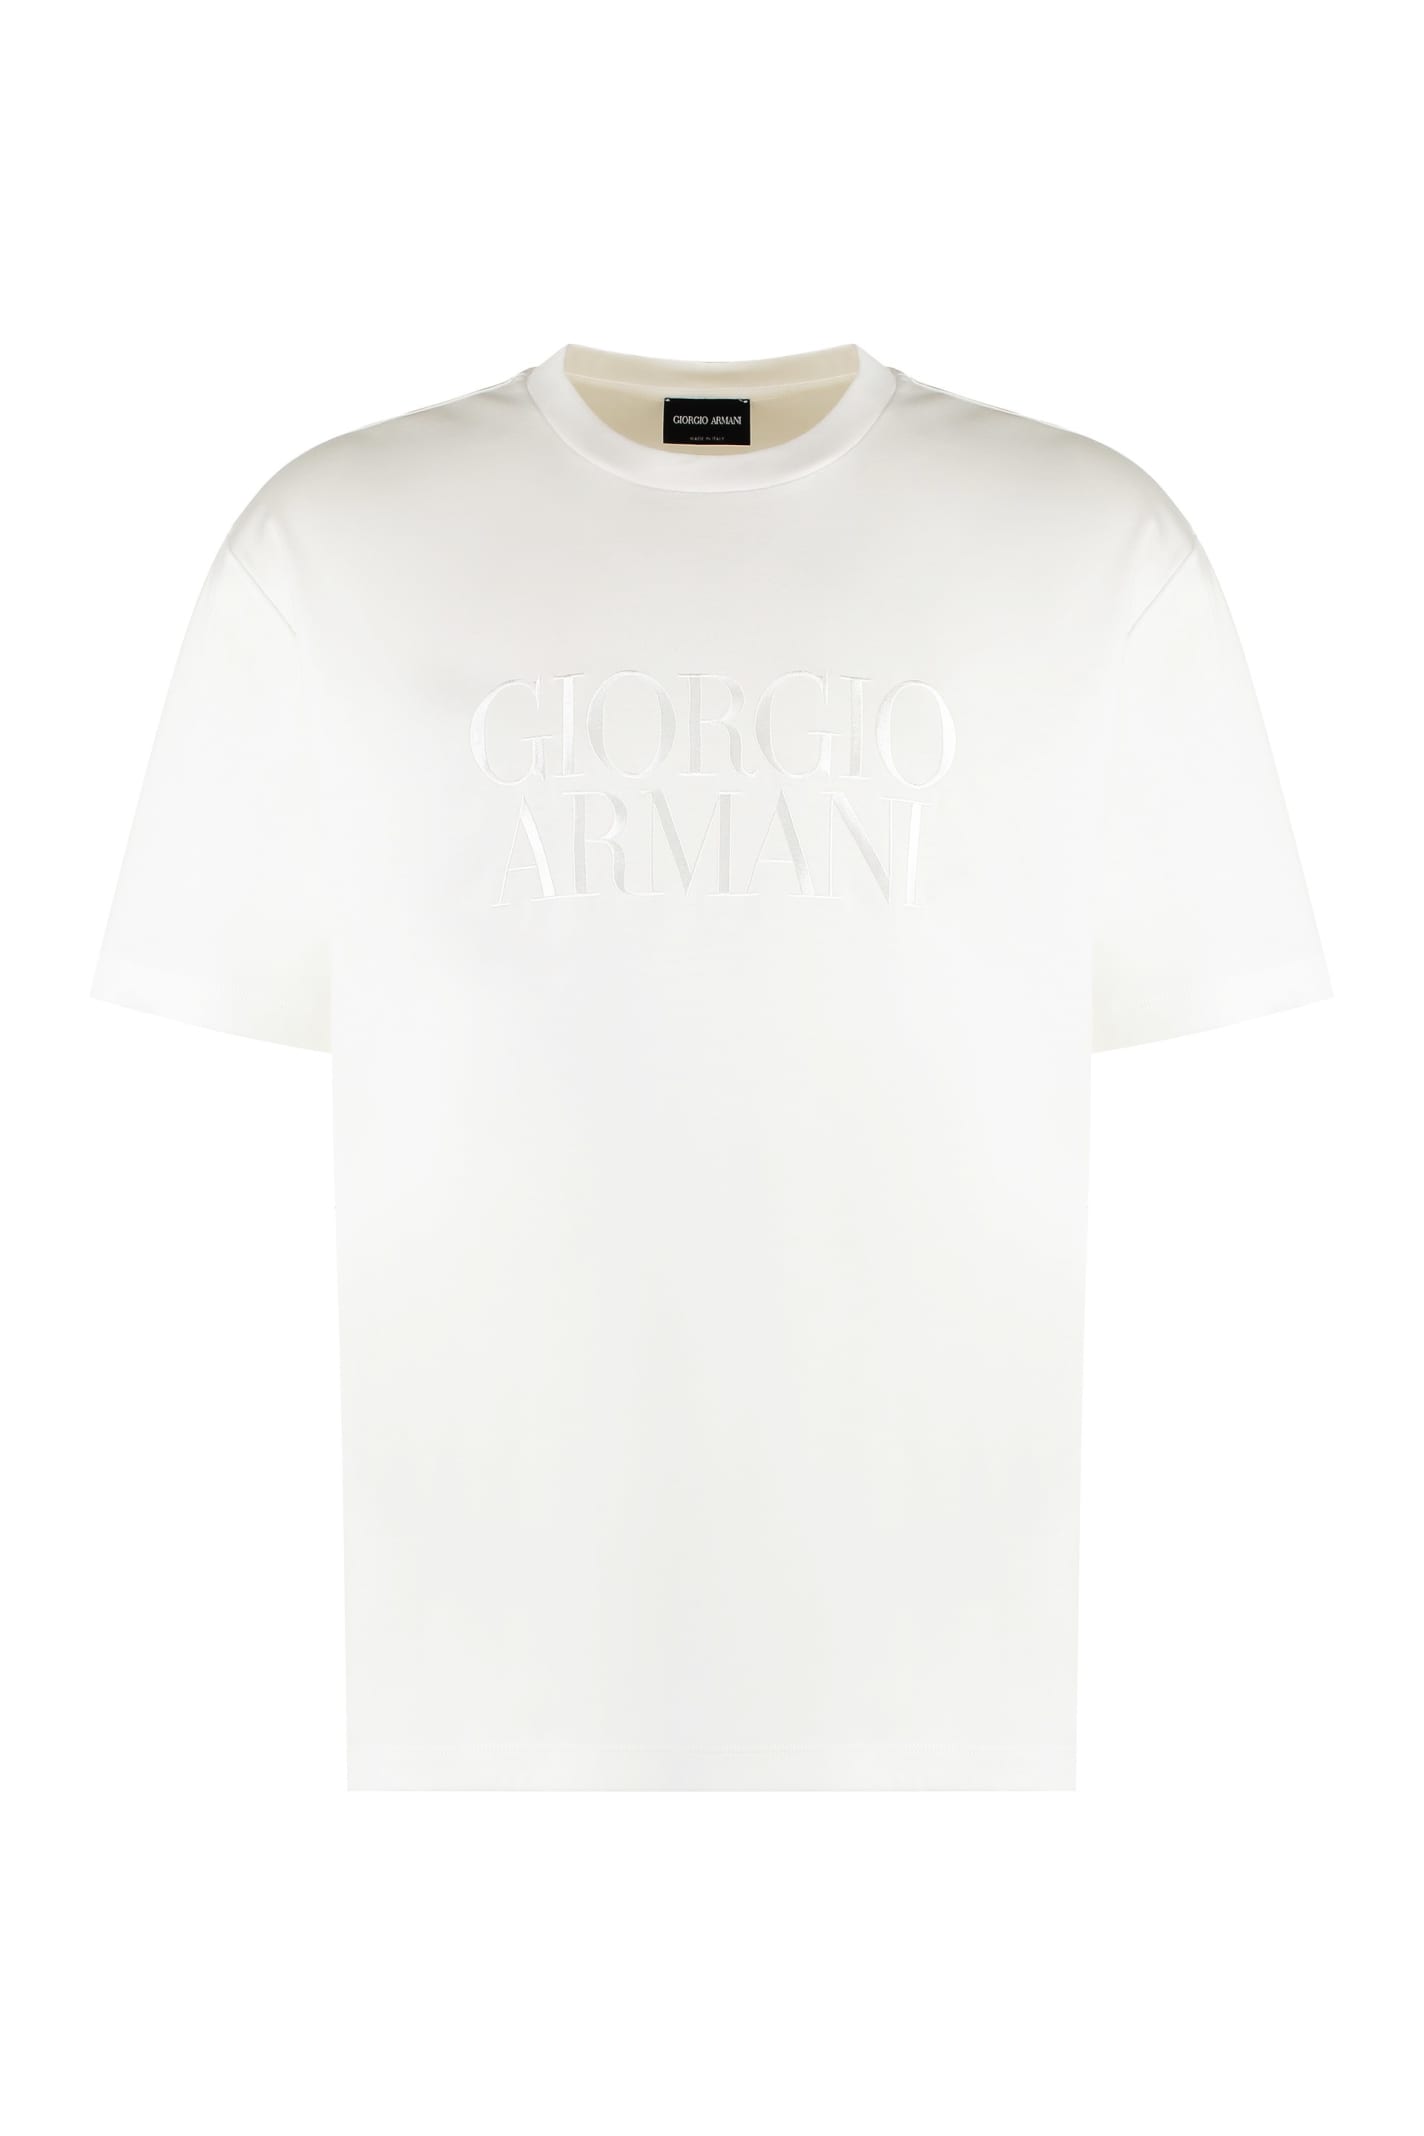 Shop Giorgio Armani Cotton Crew-neck T-shirt